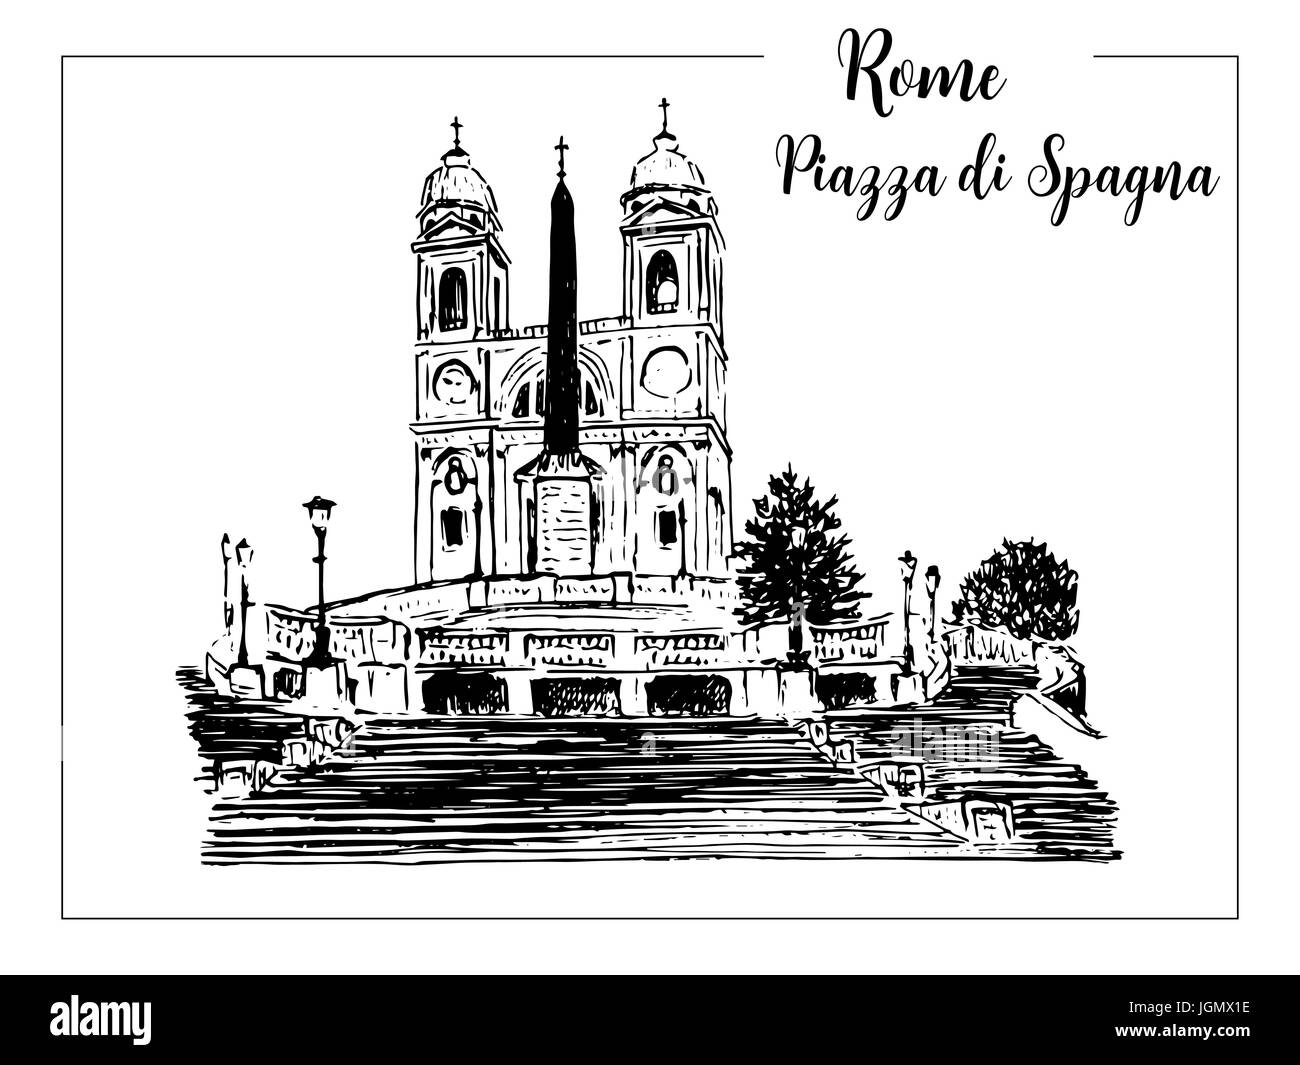 Piazza di Spagna und spanische Treppe. Rom architektonisches Symbol. Wunderschöne handgezeichnete Skizze Vektorgrafik. Italien. Für Drucke, Textil, Werbung Stock Vektor